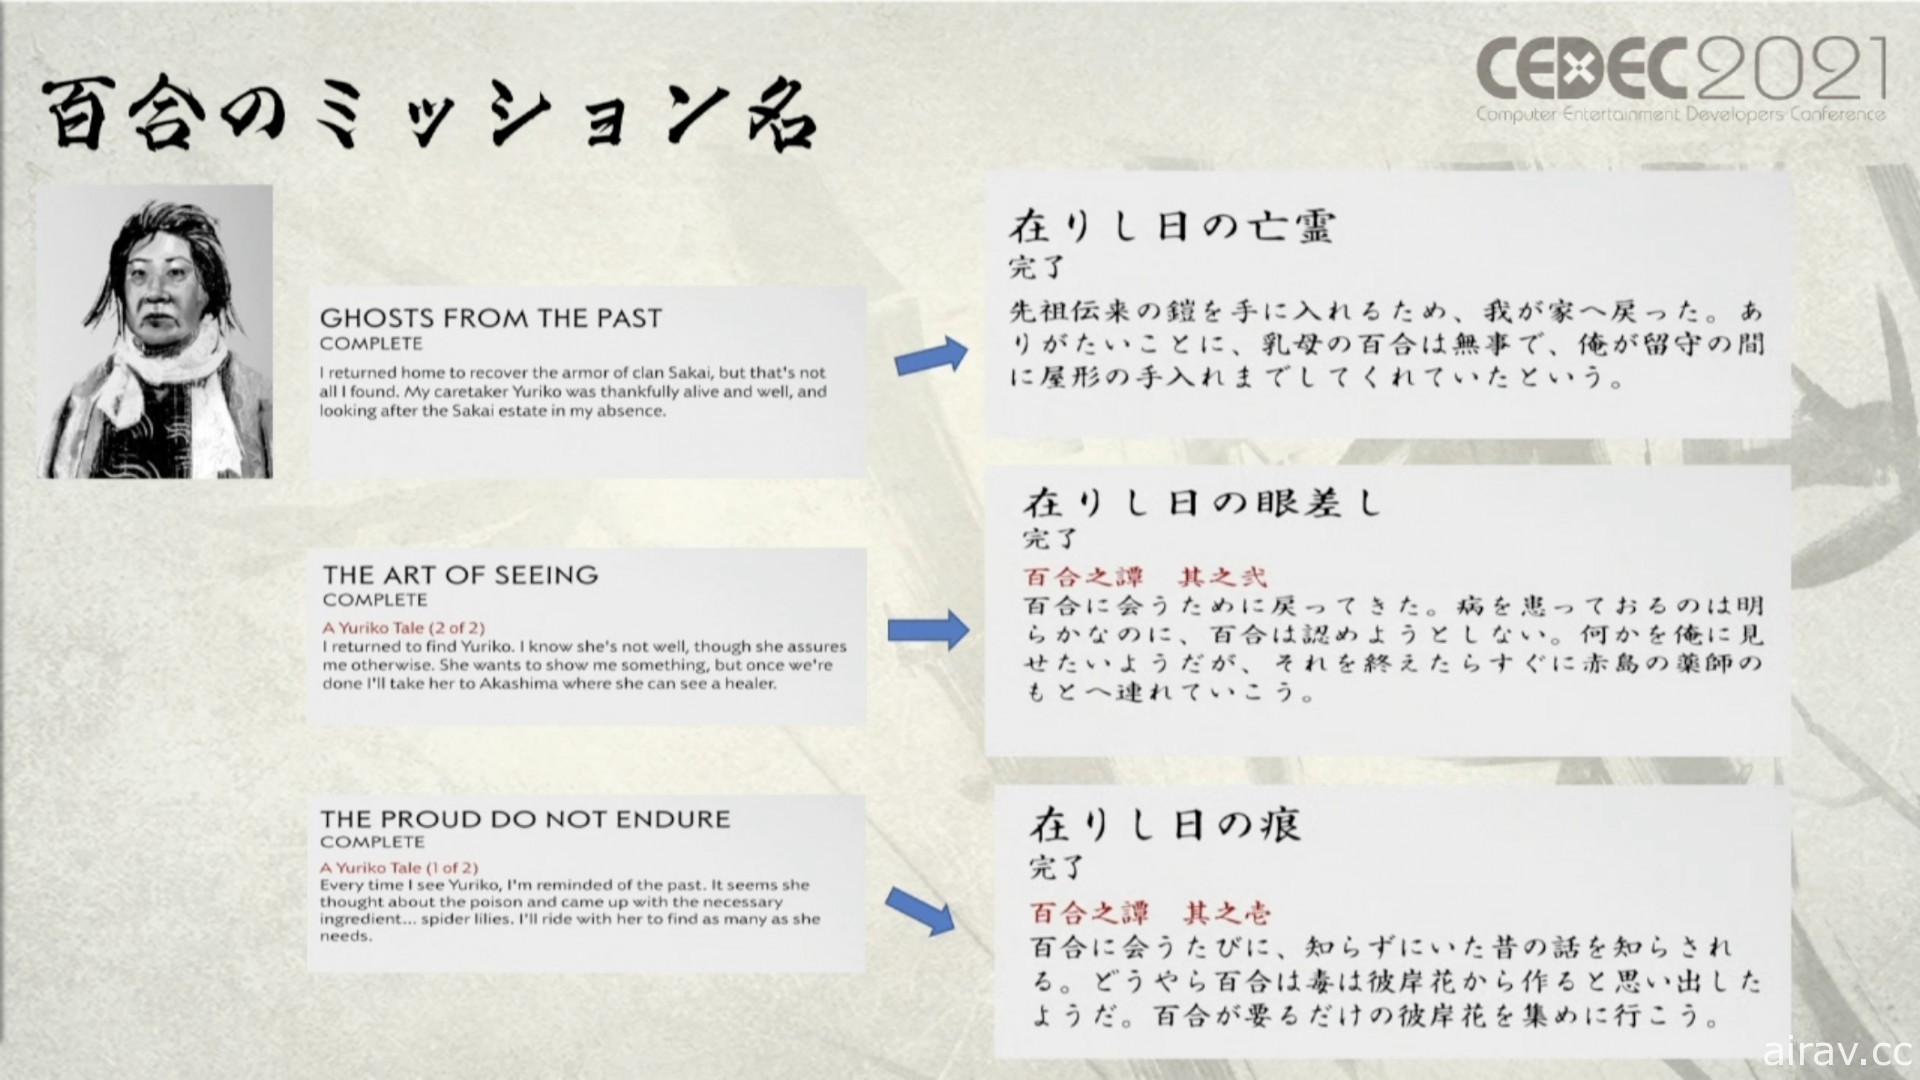 【CEDEC 21】《對馬戰鬼》在地化得到的六種啟發 只有日文版的政子大人愛生氣？